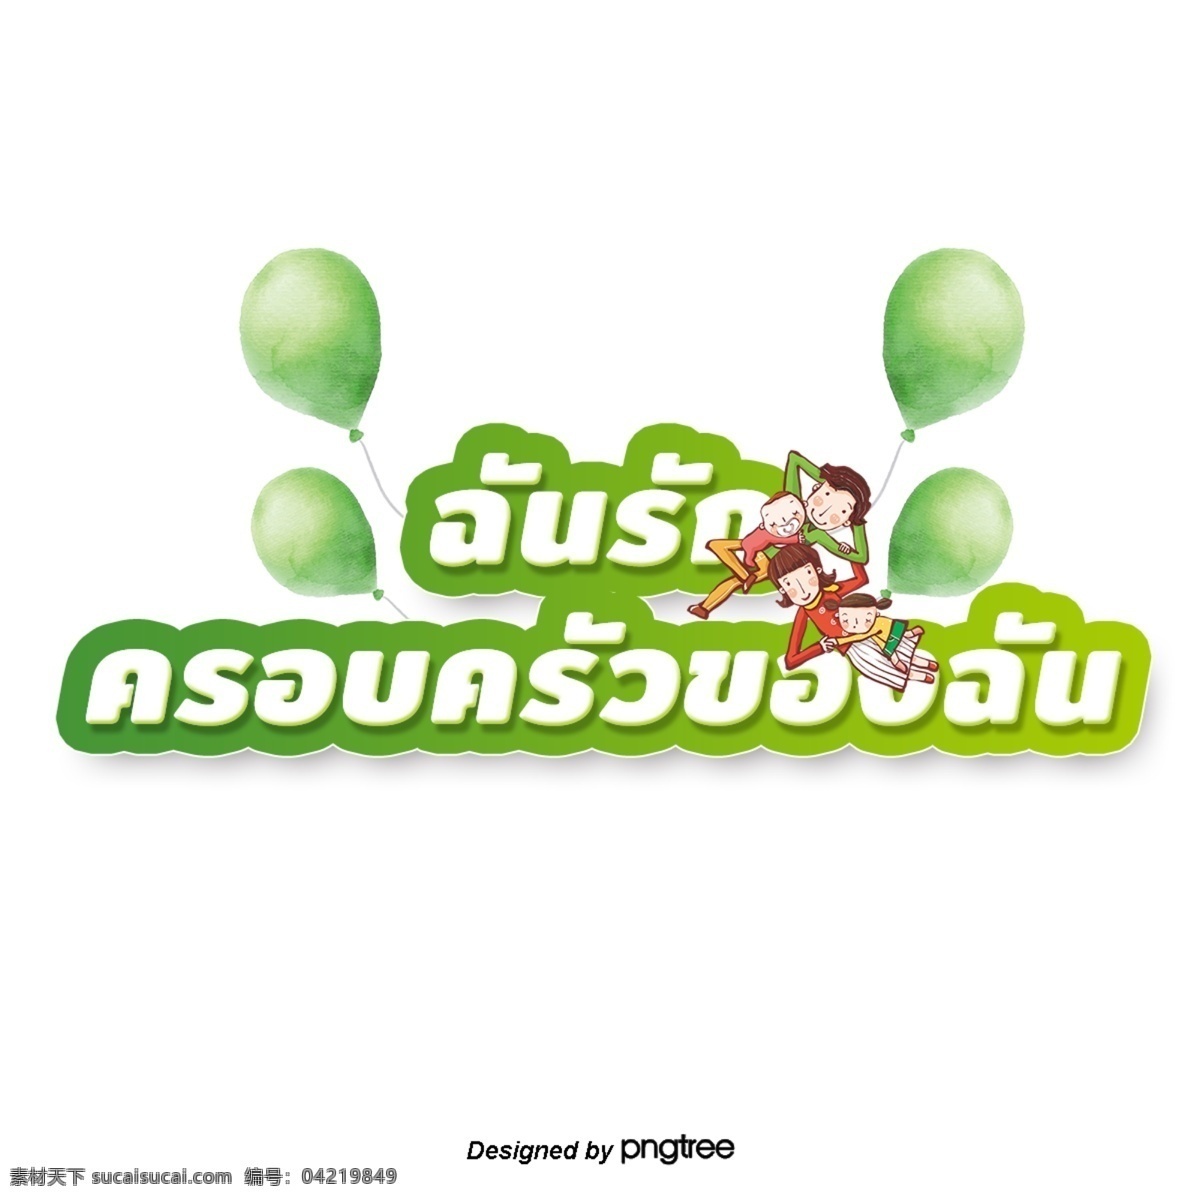 泰国 白色 字体 边缘 浅绿色 我爱 我的家 庭 绿色 气球 父母 父母和子女